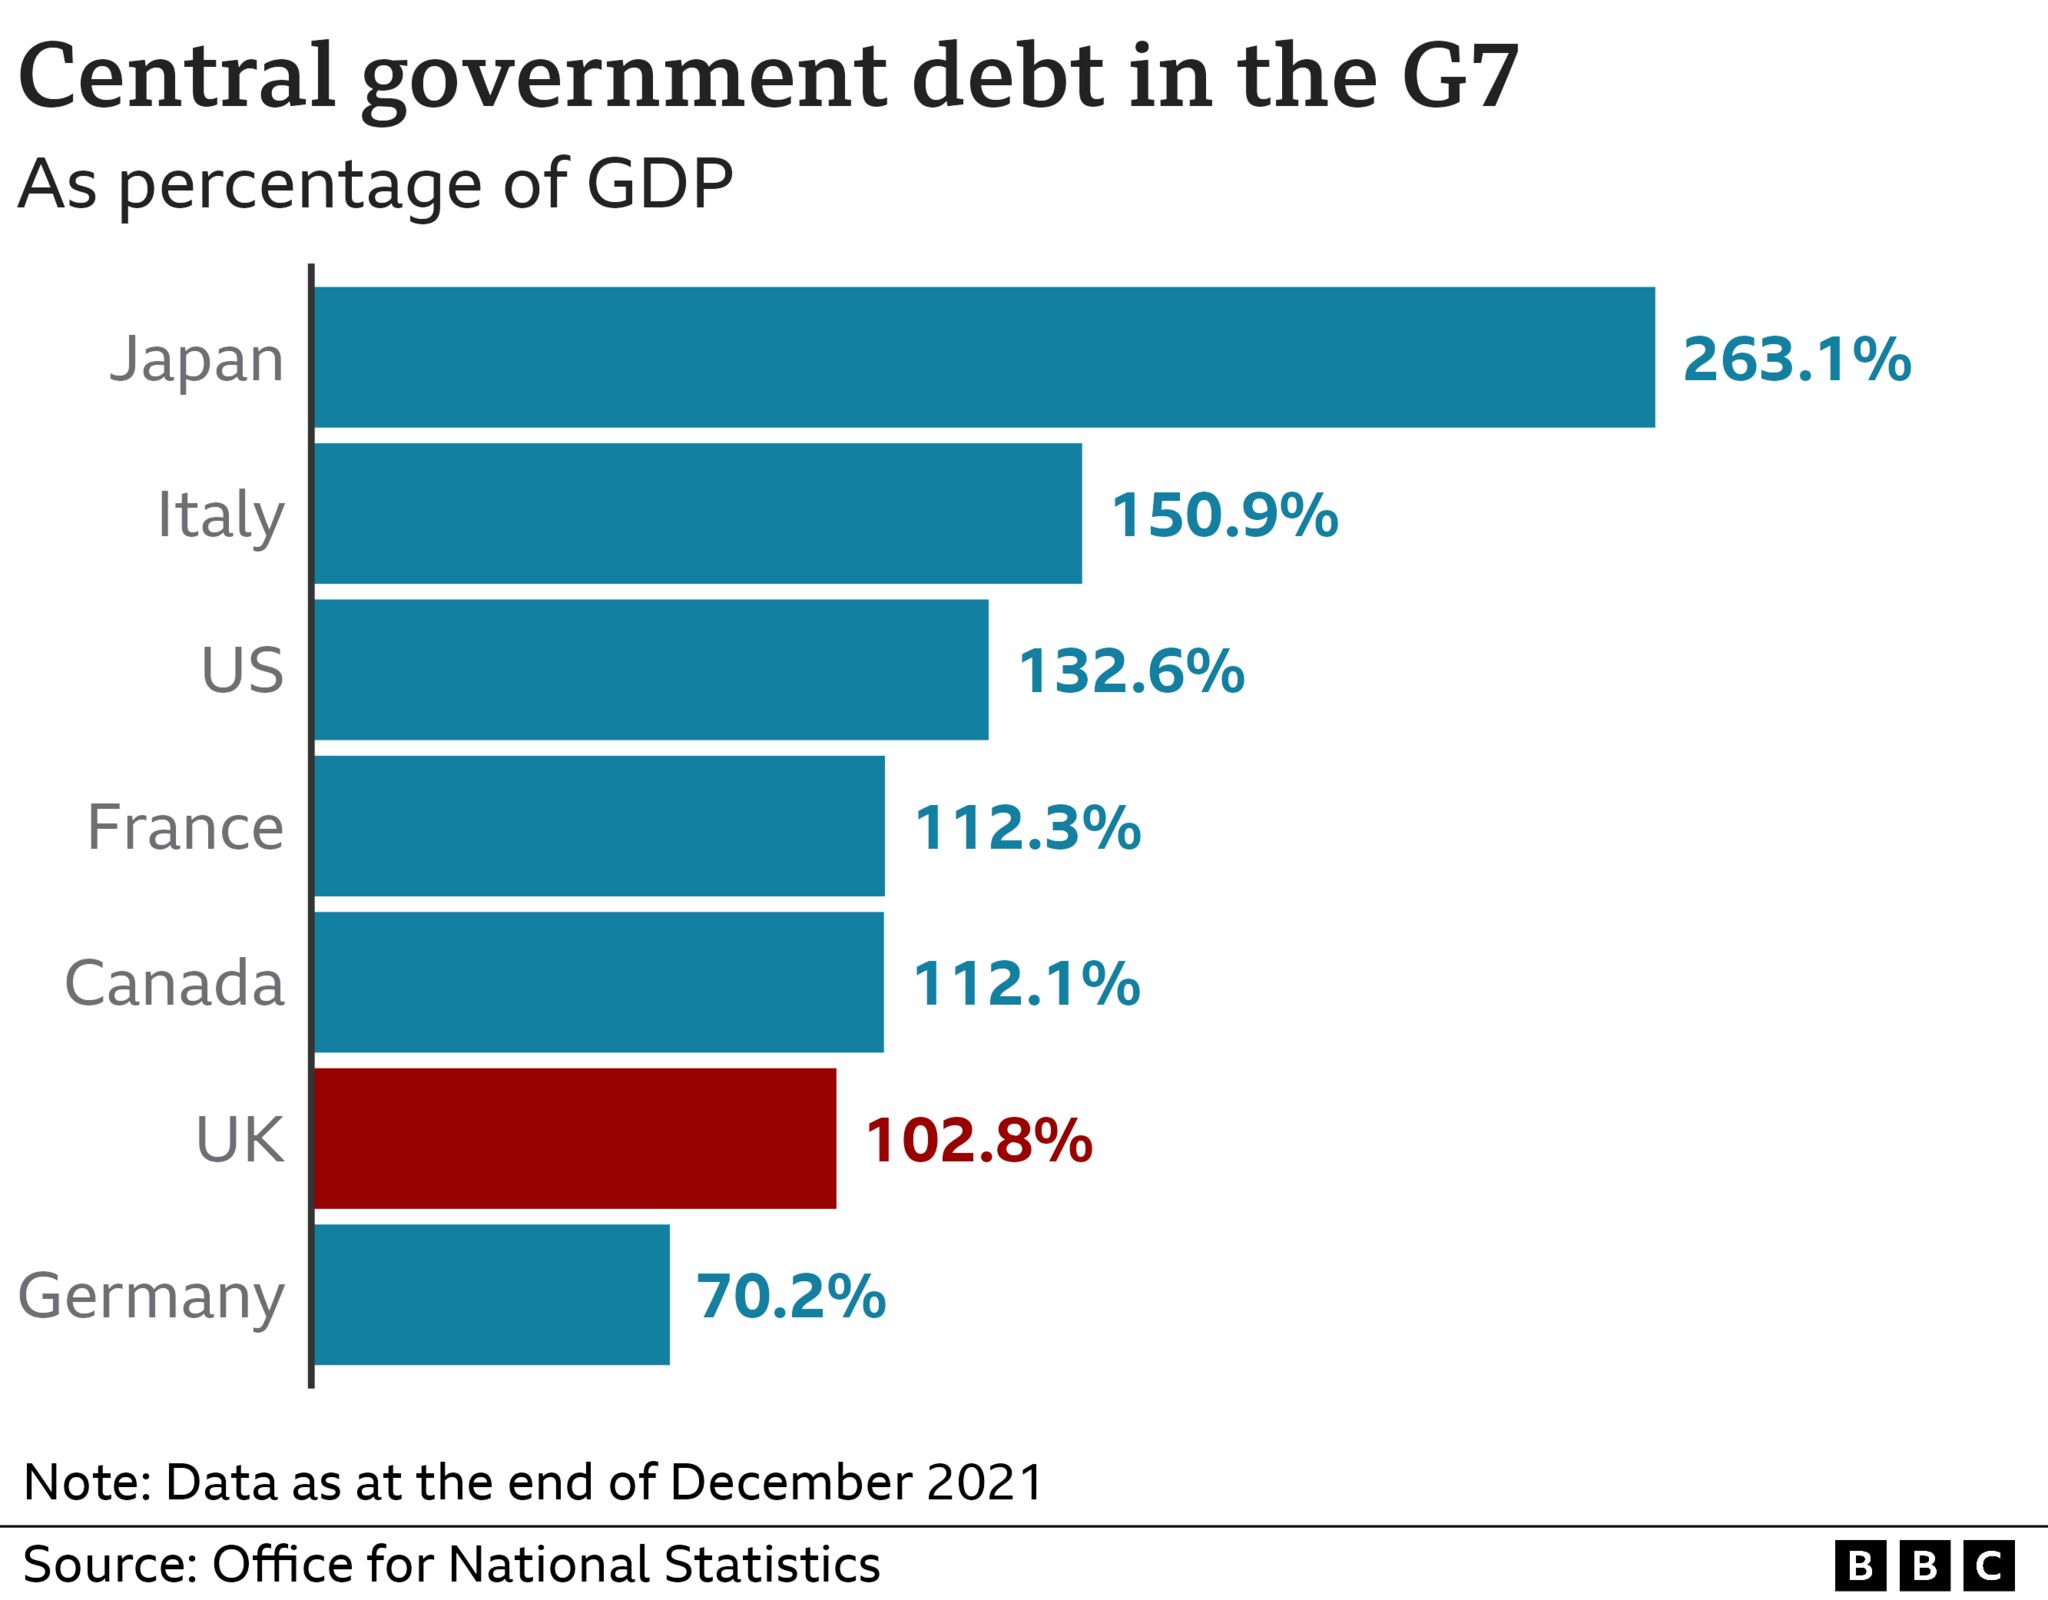 Диаграмма, показывающая долг центрального правительства в G7 в процентах от ВВП